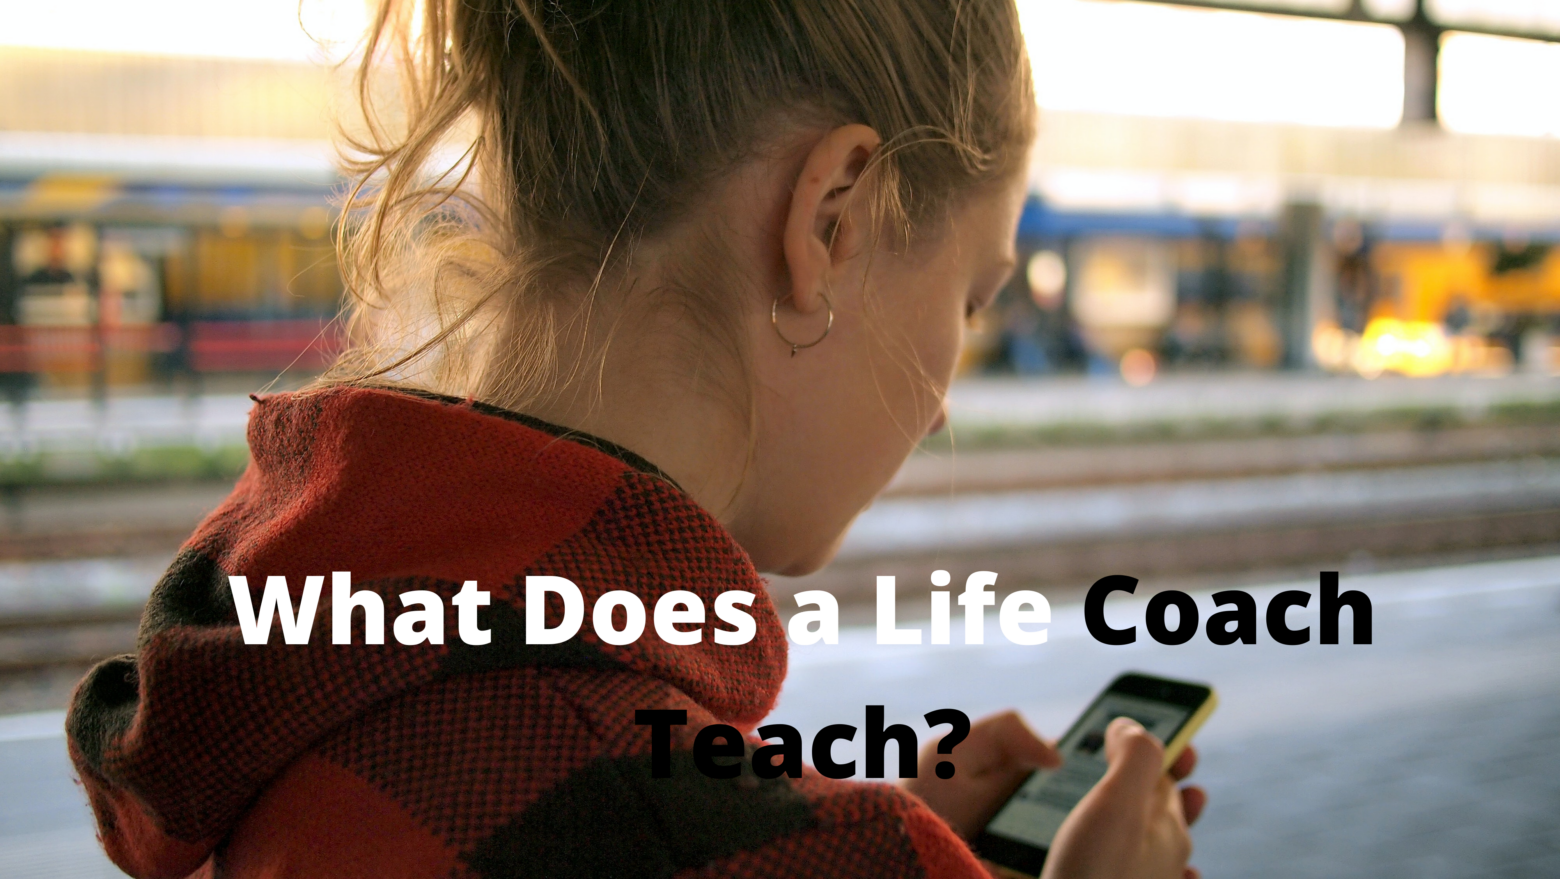 What Does a Life Coach Teach?